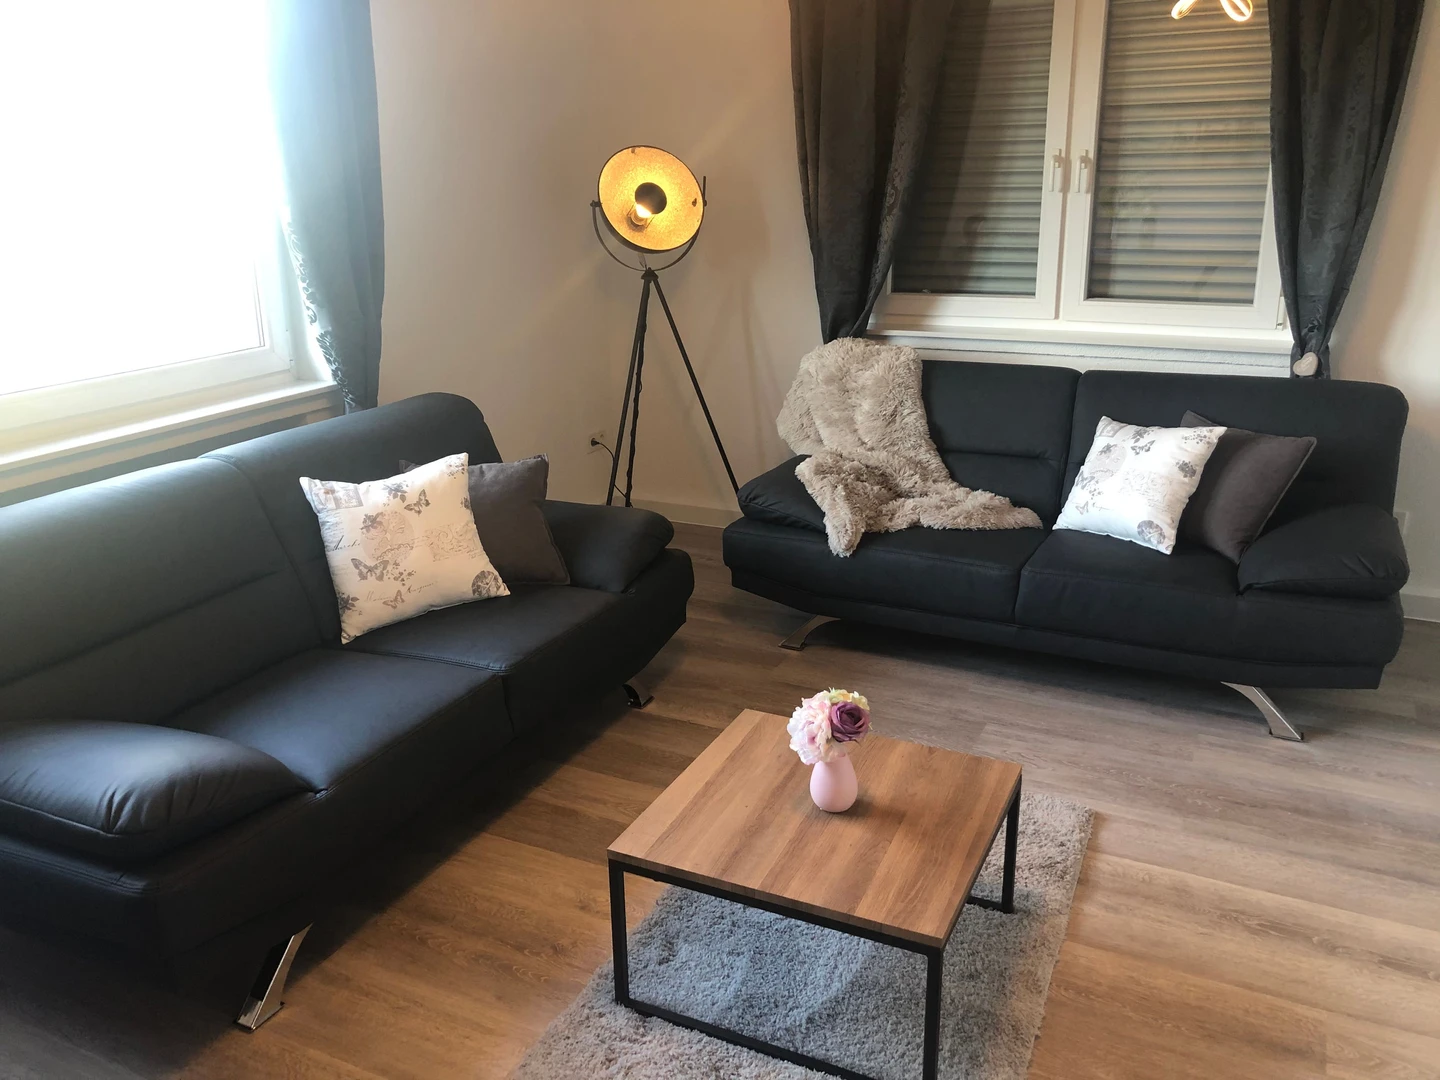 Alquiler de habitaciones por meses en Kaiserslautern